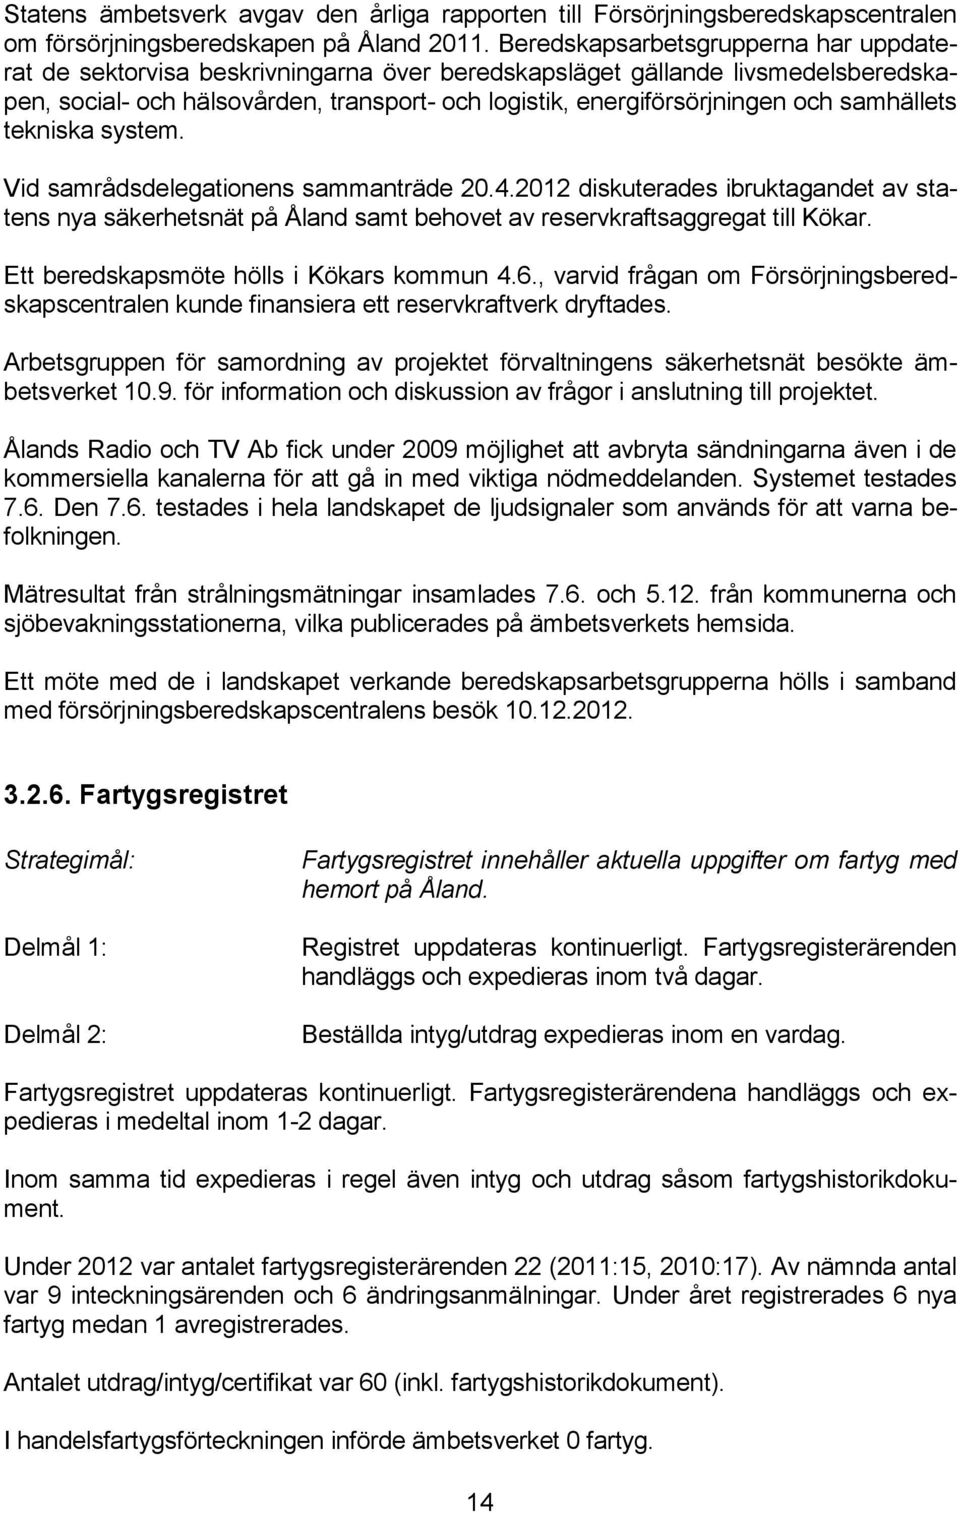 samhällets tekniska system. Vid samrådsdelegationens sammanträde 20.4.2012 diskuterades ibruktagandet av statens nya säkerhetsnät på Åland samt behovet av reservkraftsaggregat till Kökar.